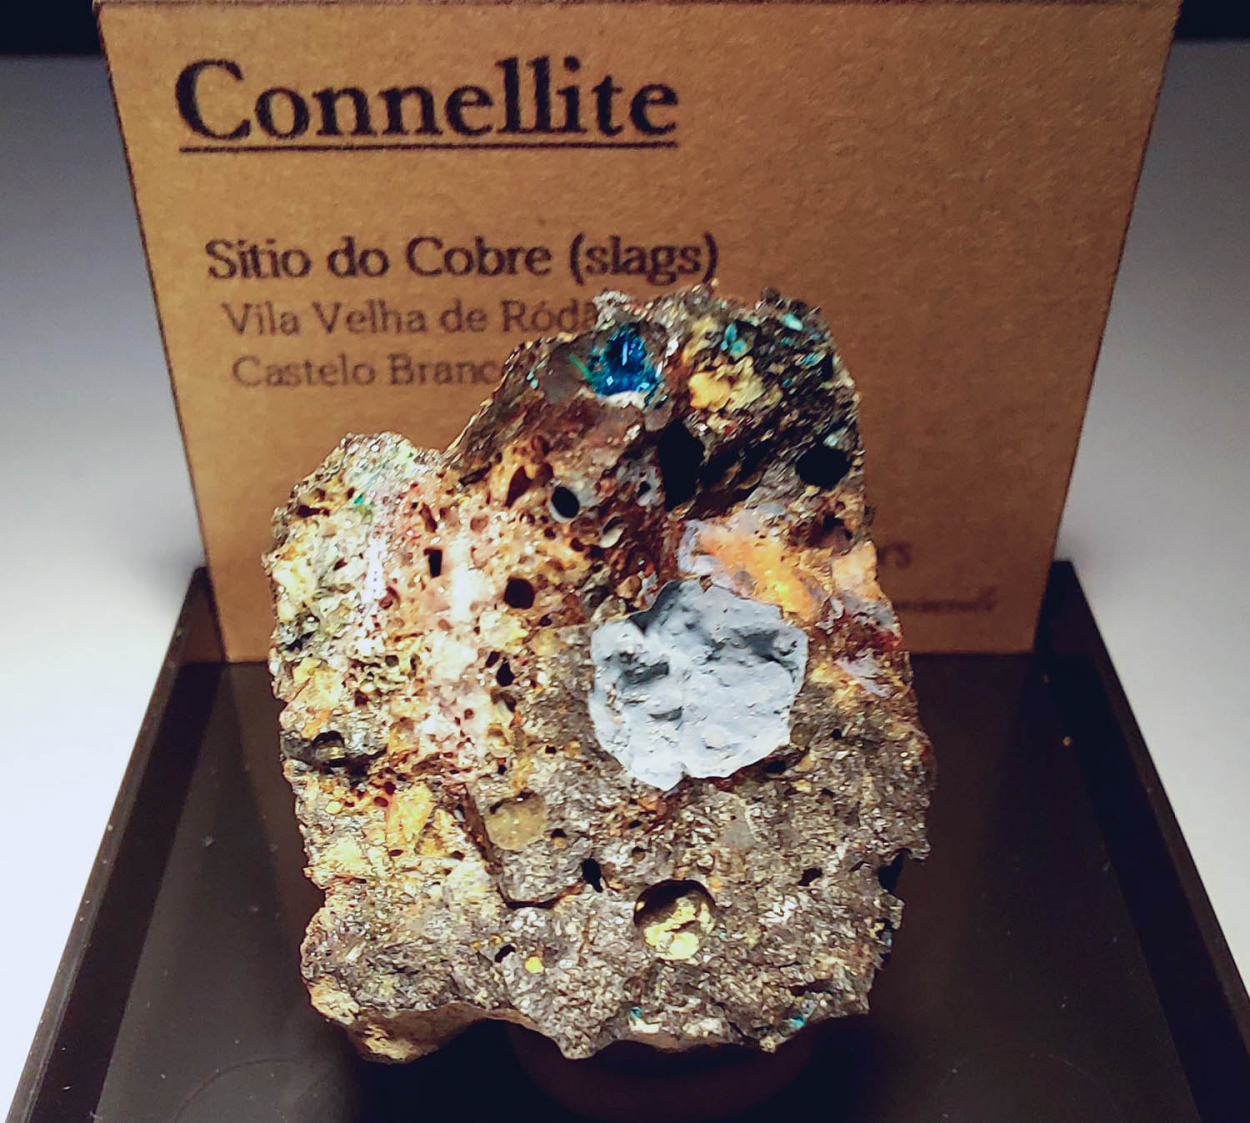 Connellite